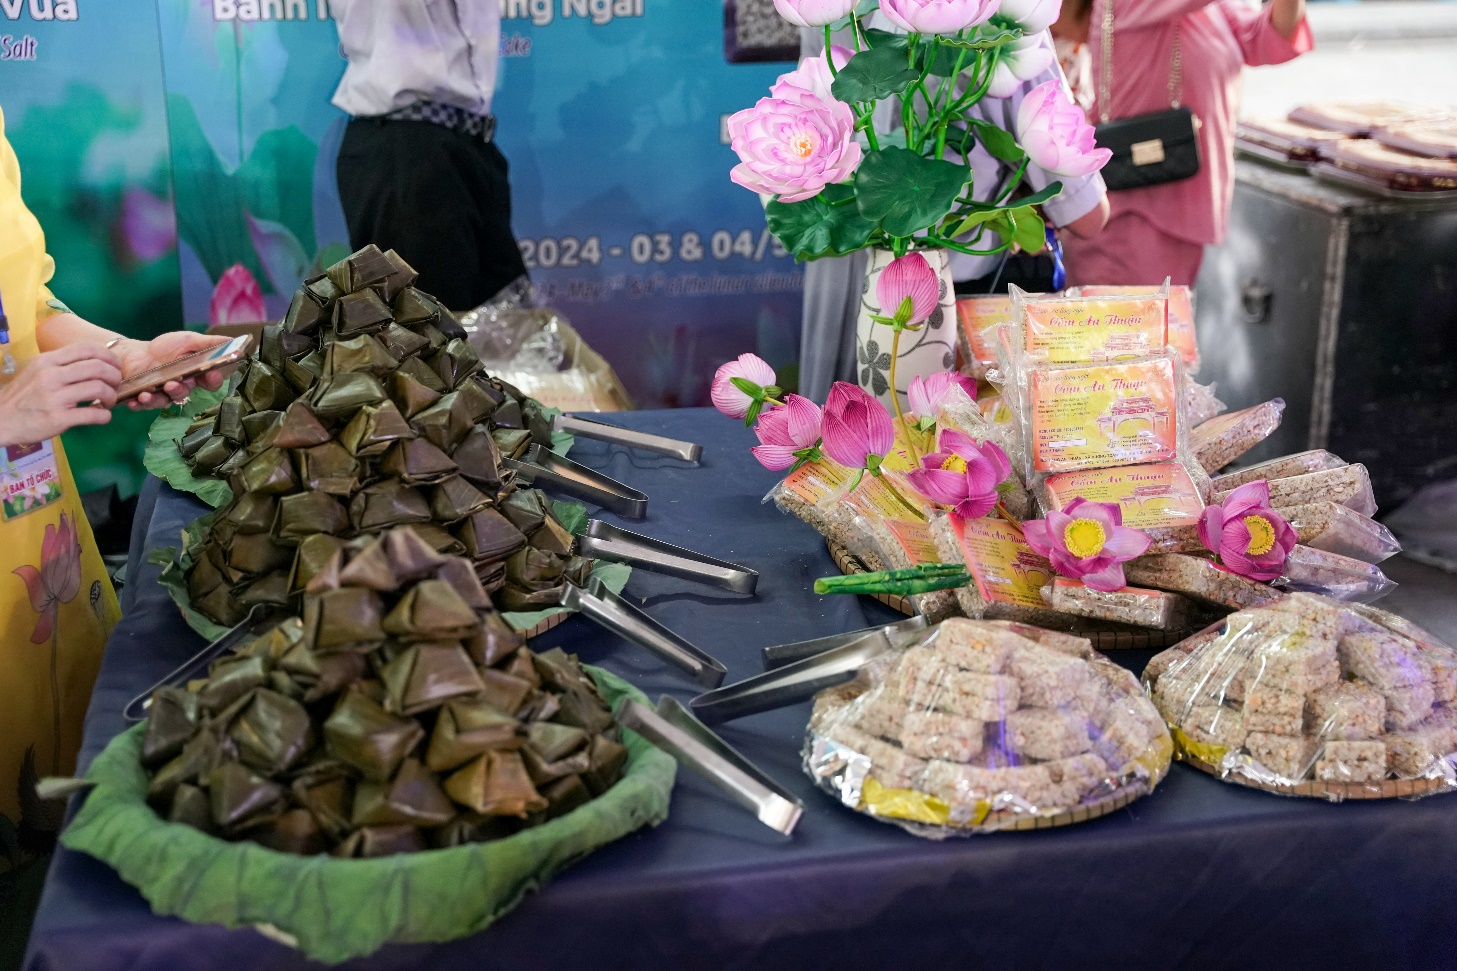 Đi xem Festival Huế, thưởng thức ẩm thực chay ngon miệng - 4